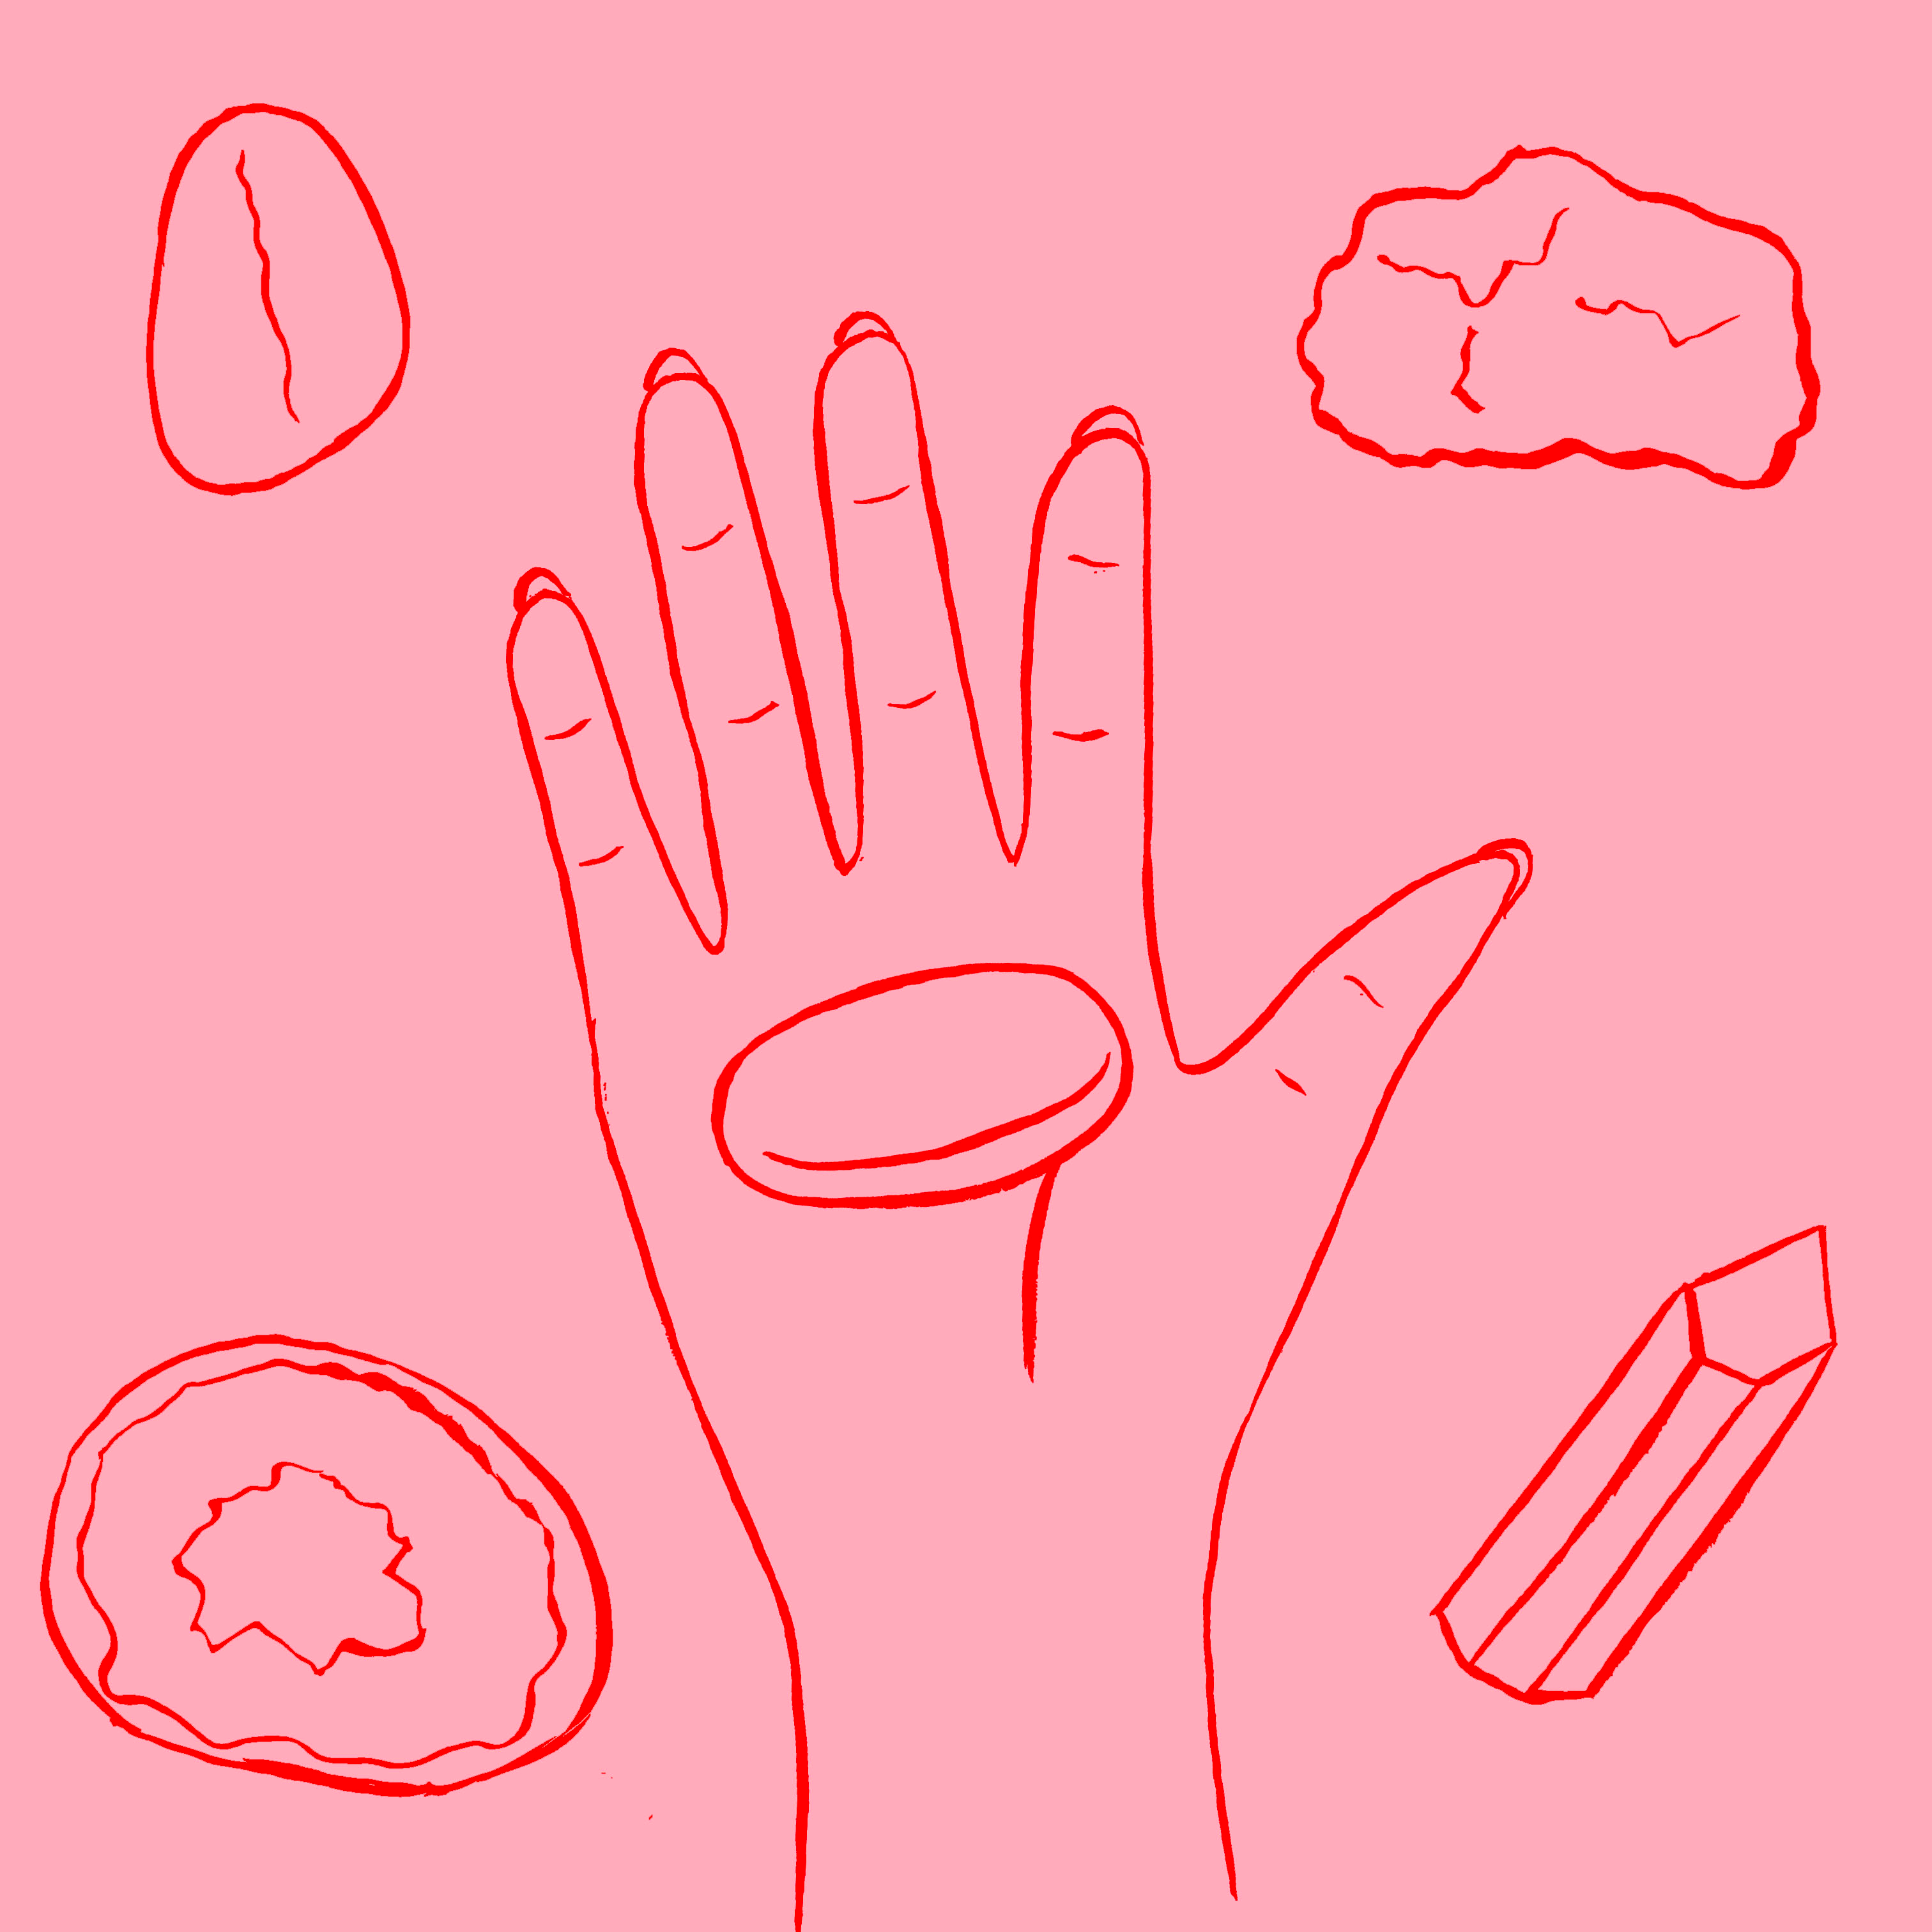 Illustration artwork of a hand holding an eraser